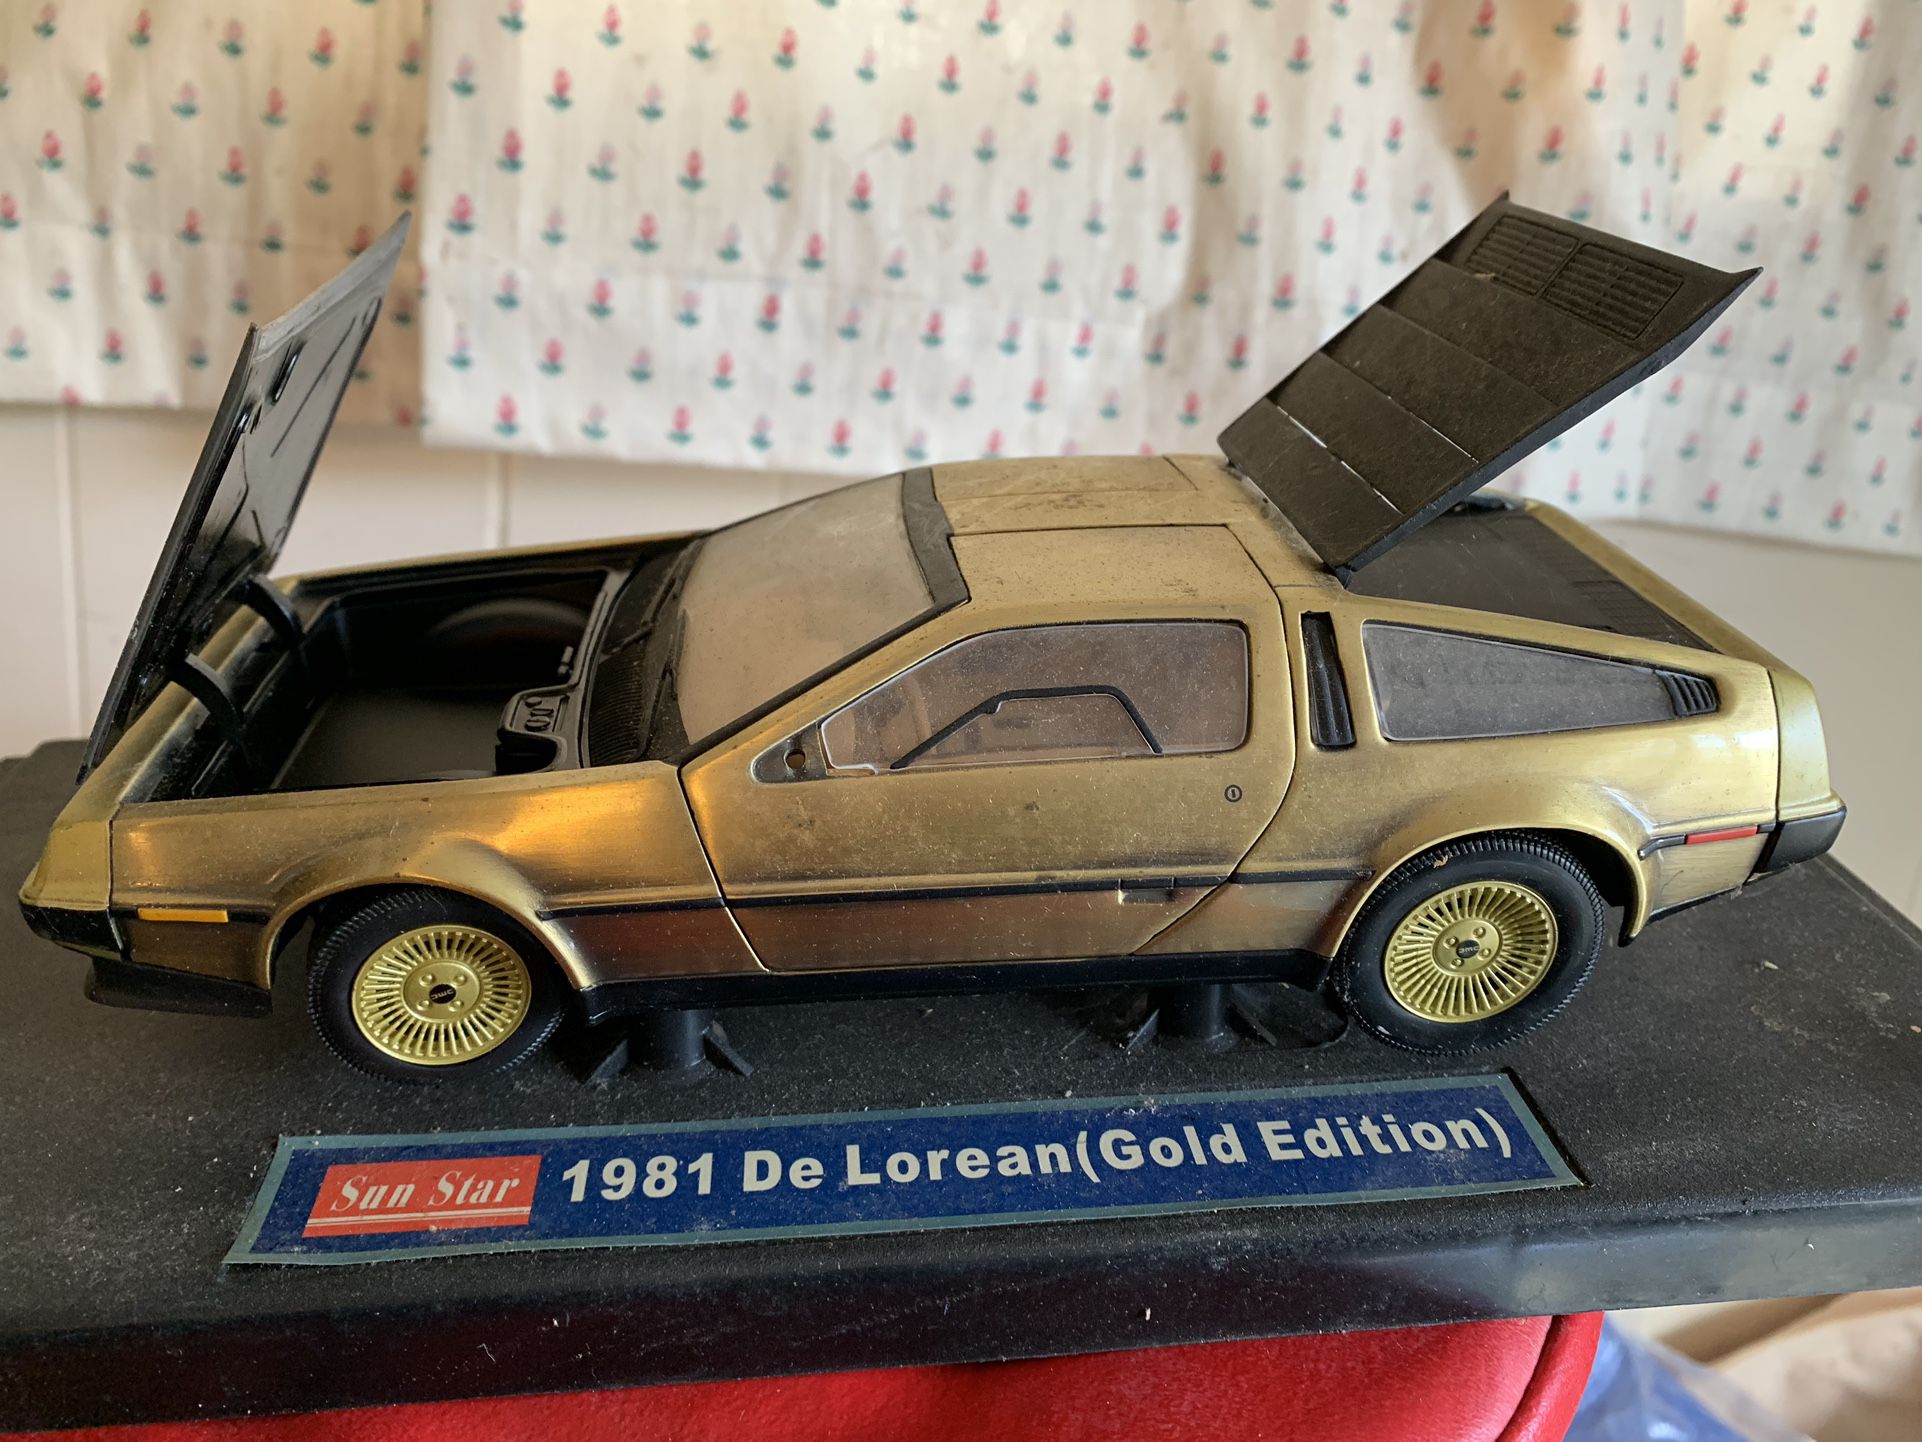 1981 Delorean Model Car Gold Edition